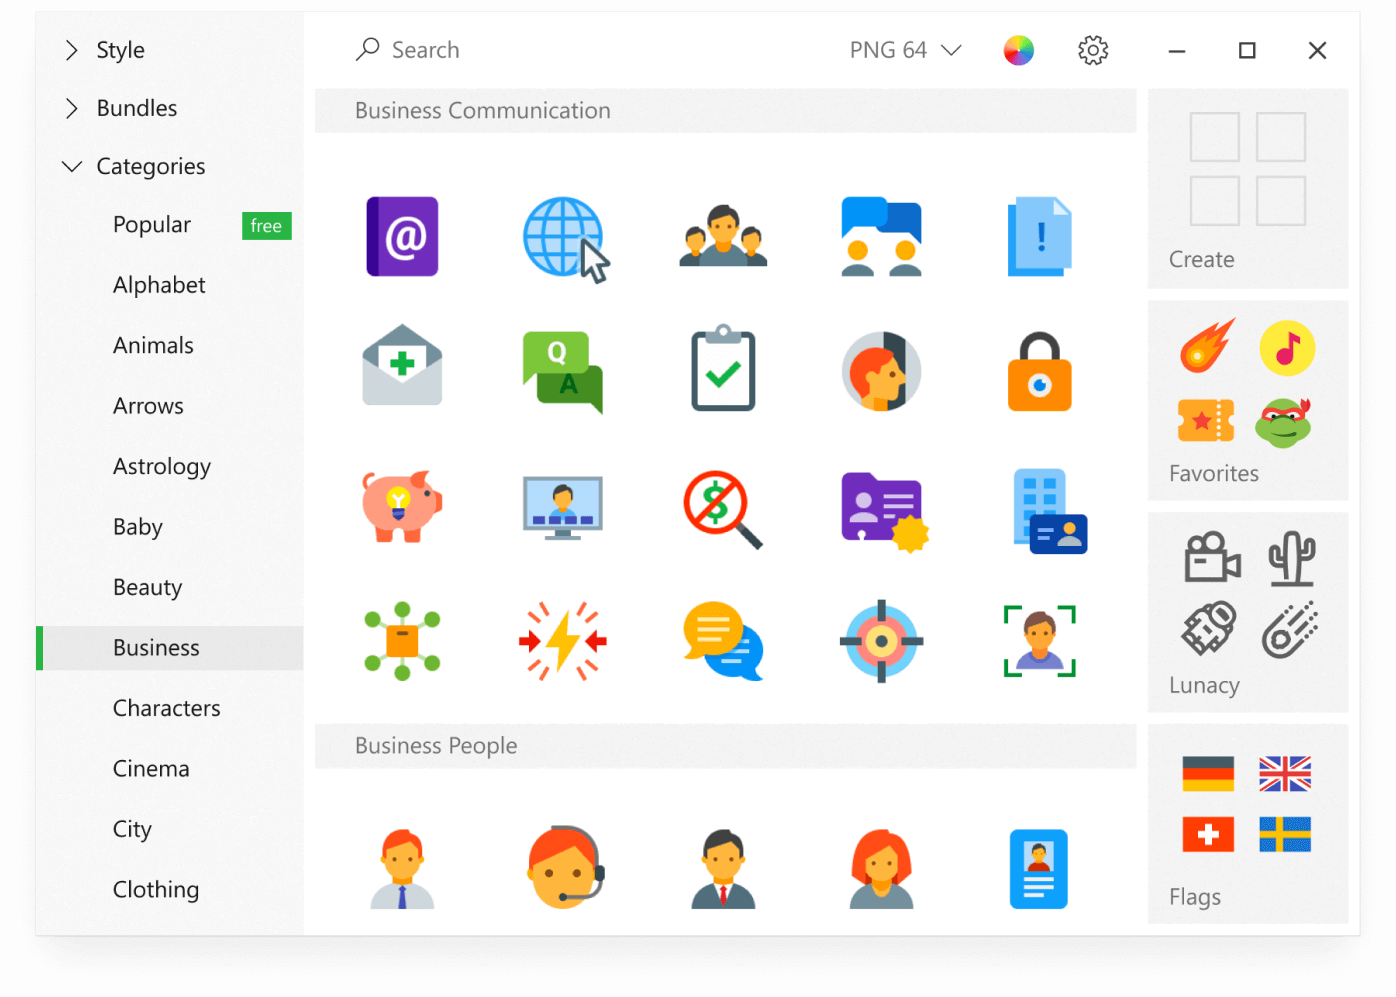 Download Pichon (Icons8) Terbaru